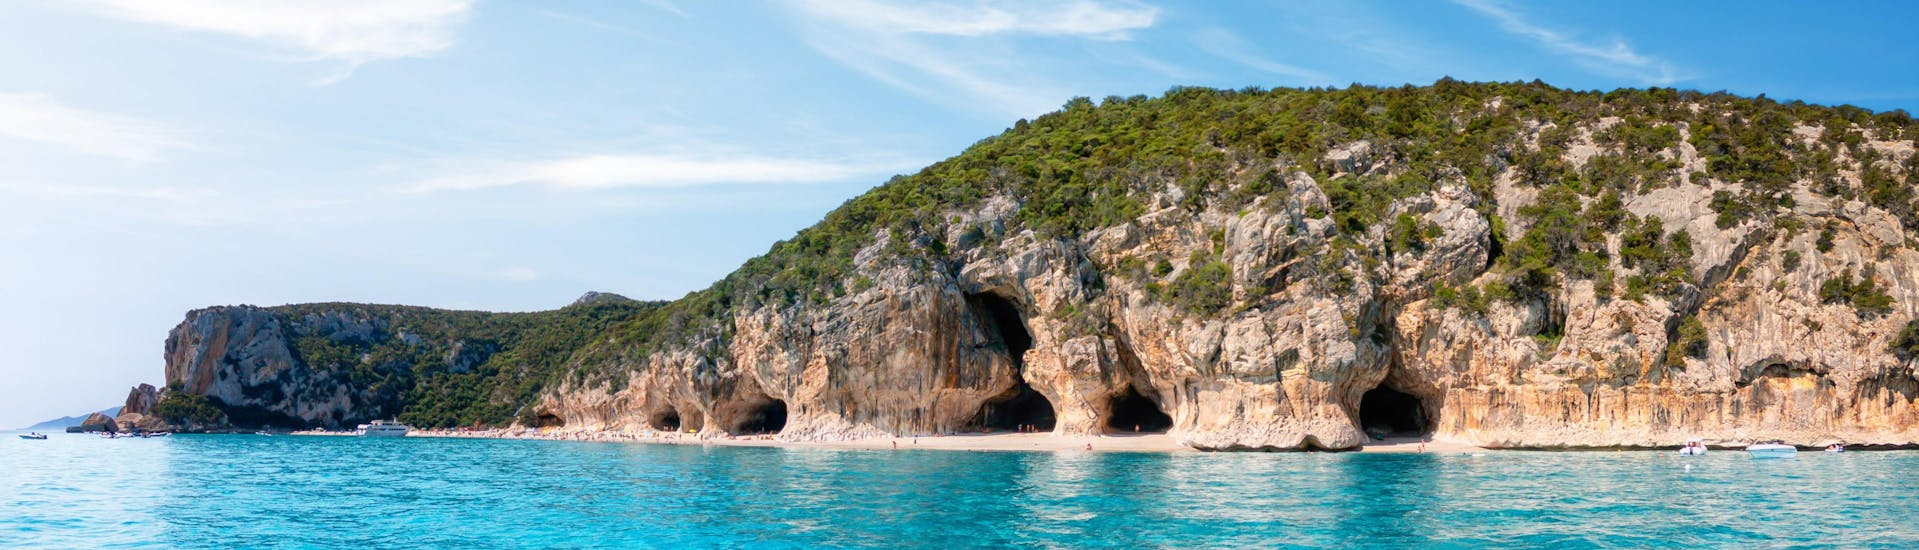 Imagen de las cuevas a lo largo de la costa de Cala Luna, Cerdeña, un destino popular para las excursiones en barco.